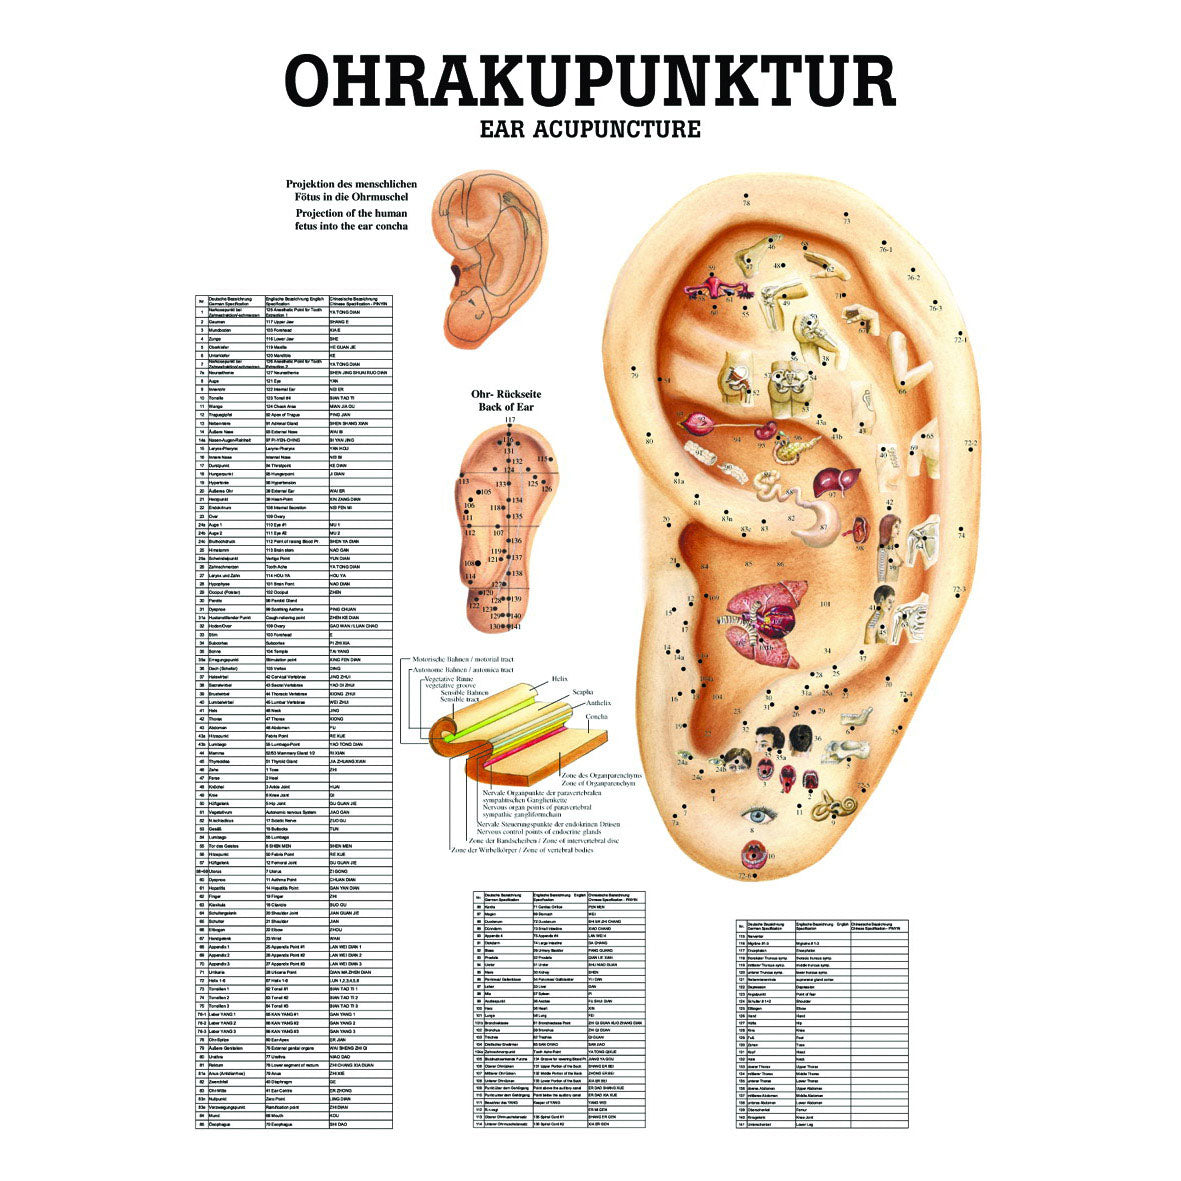 Anatomisches Miniposter "Ohrakupunktur"